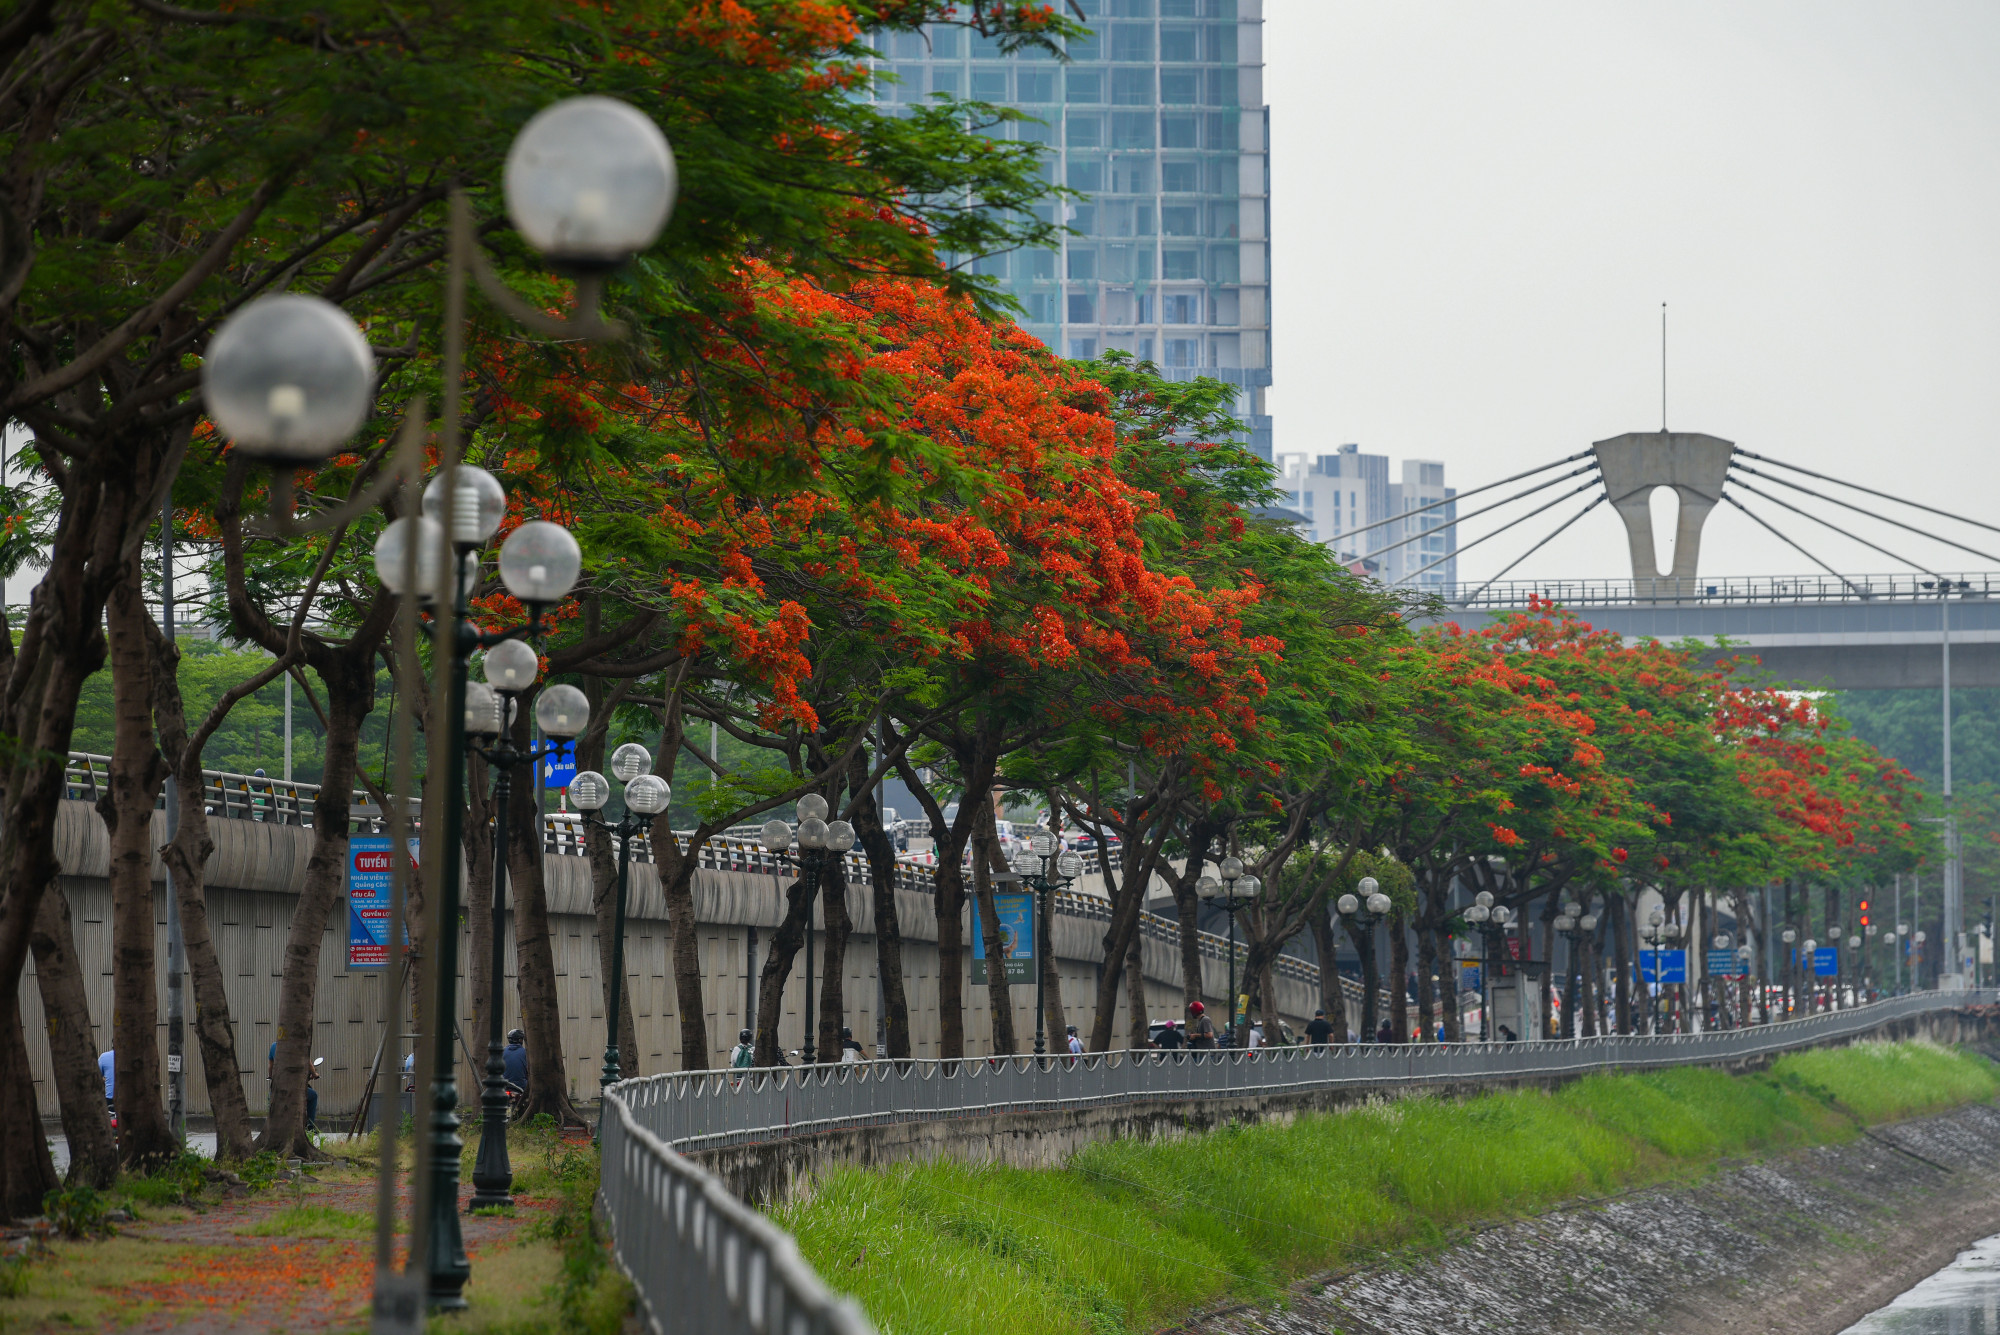 Màu đỏ rực rỡ bao phủ 2 bên bờ sông Tô Lịch tạ nên một vẻ đẹp rất cuốn hút.